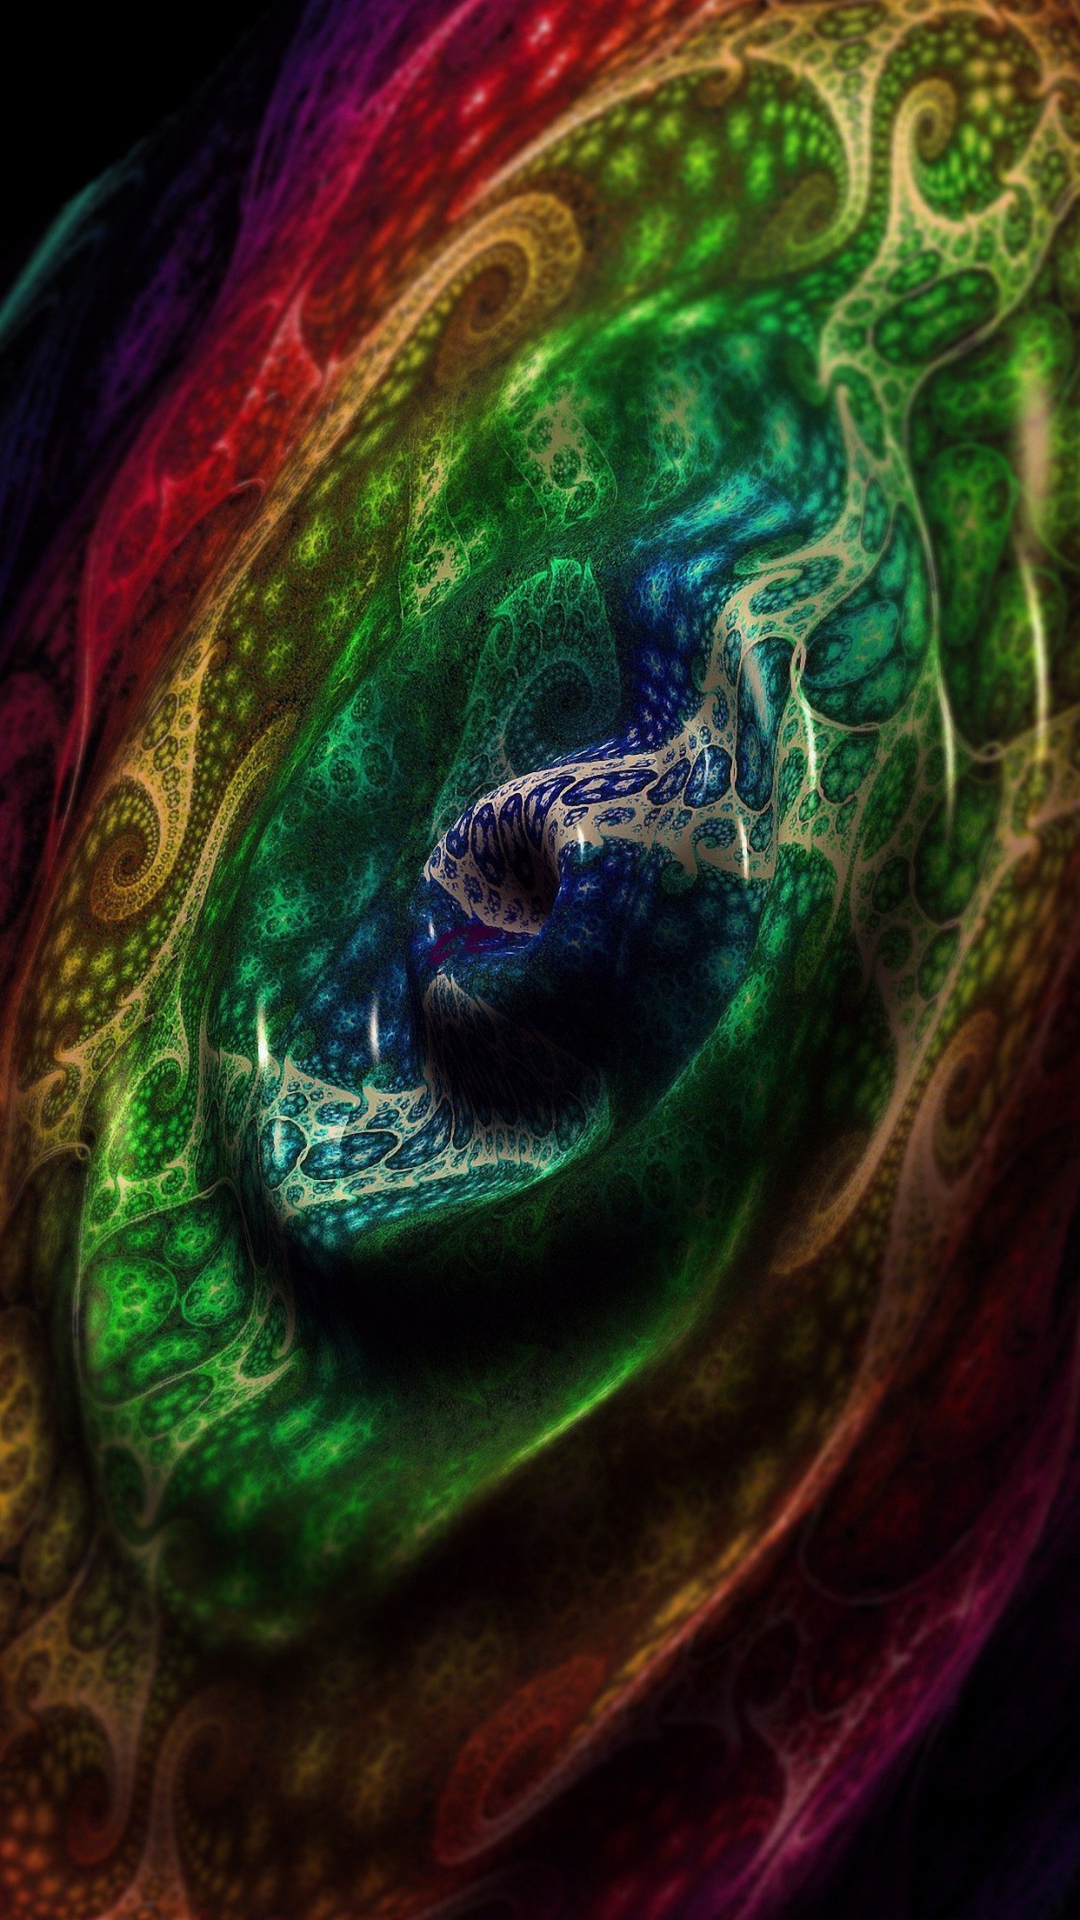 iphone 3d touch wallpaper,green,water,fractal art,eye,close up